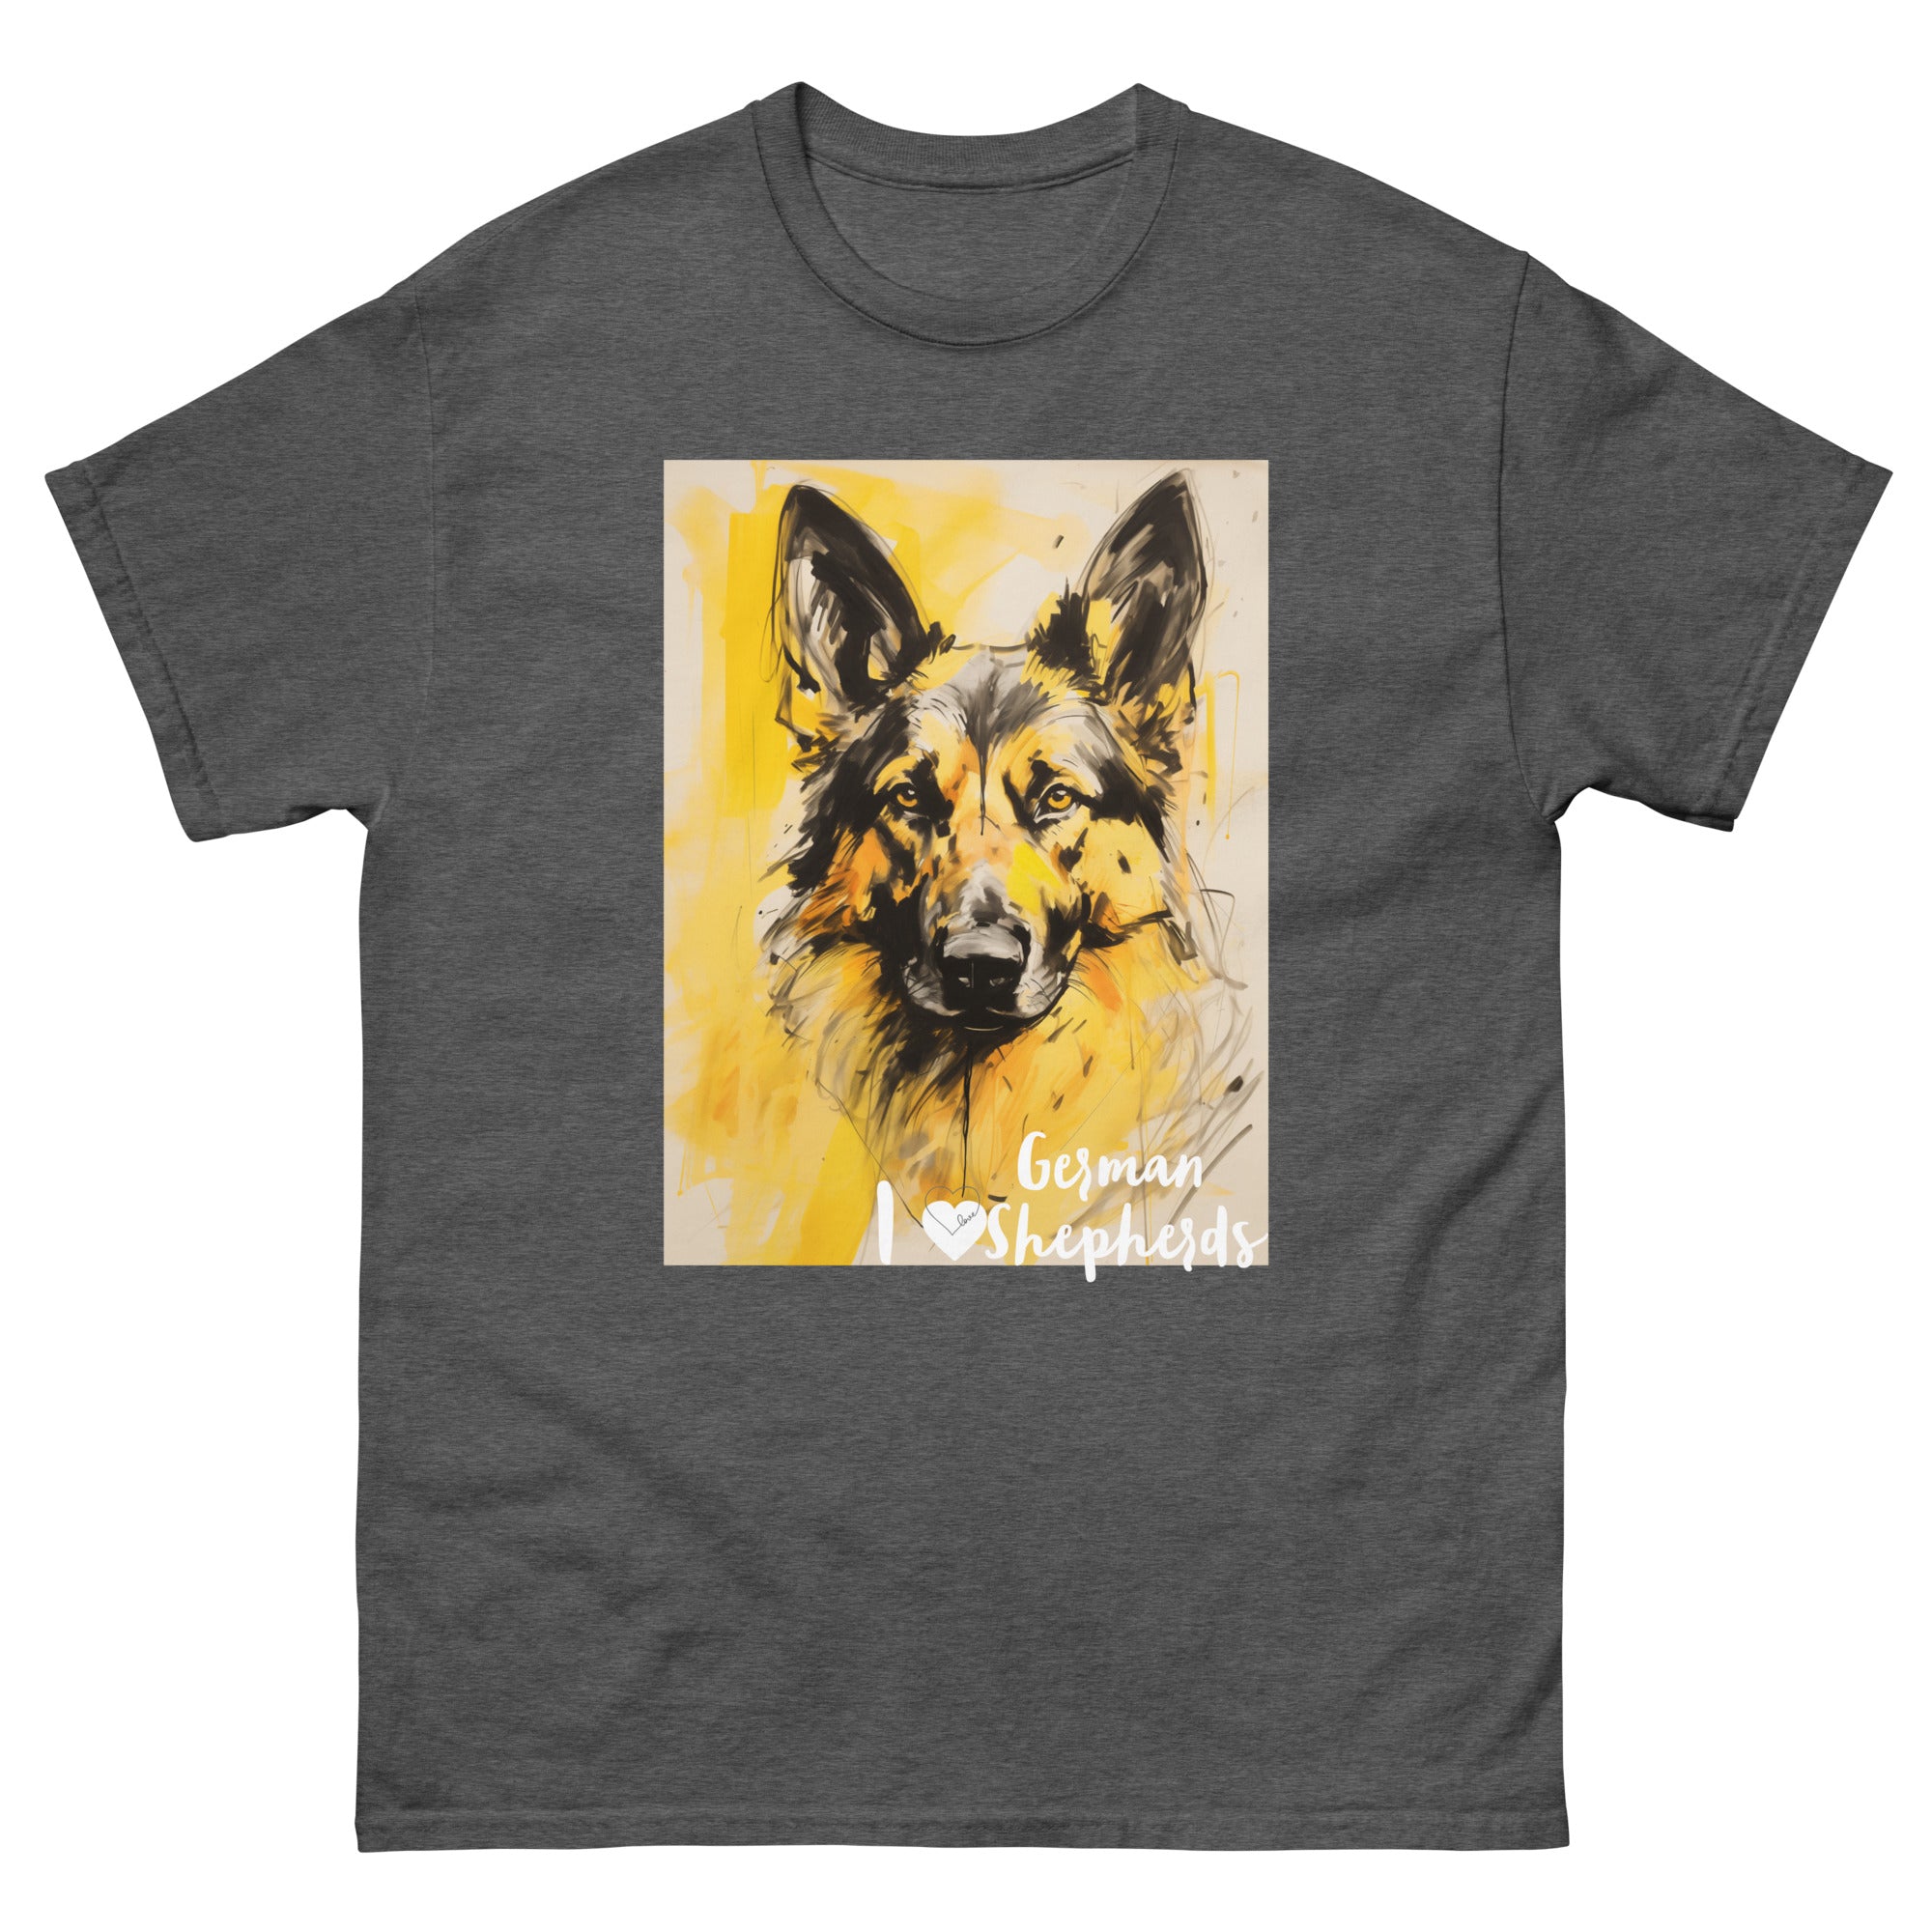 Men's classic tee - I ❤ DOGS - German Shepherd